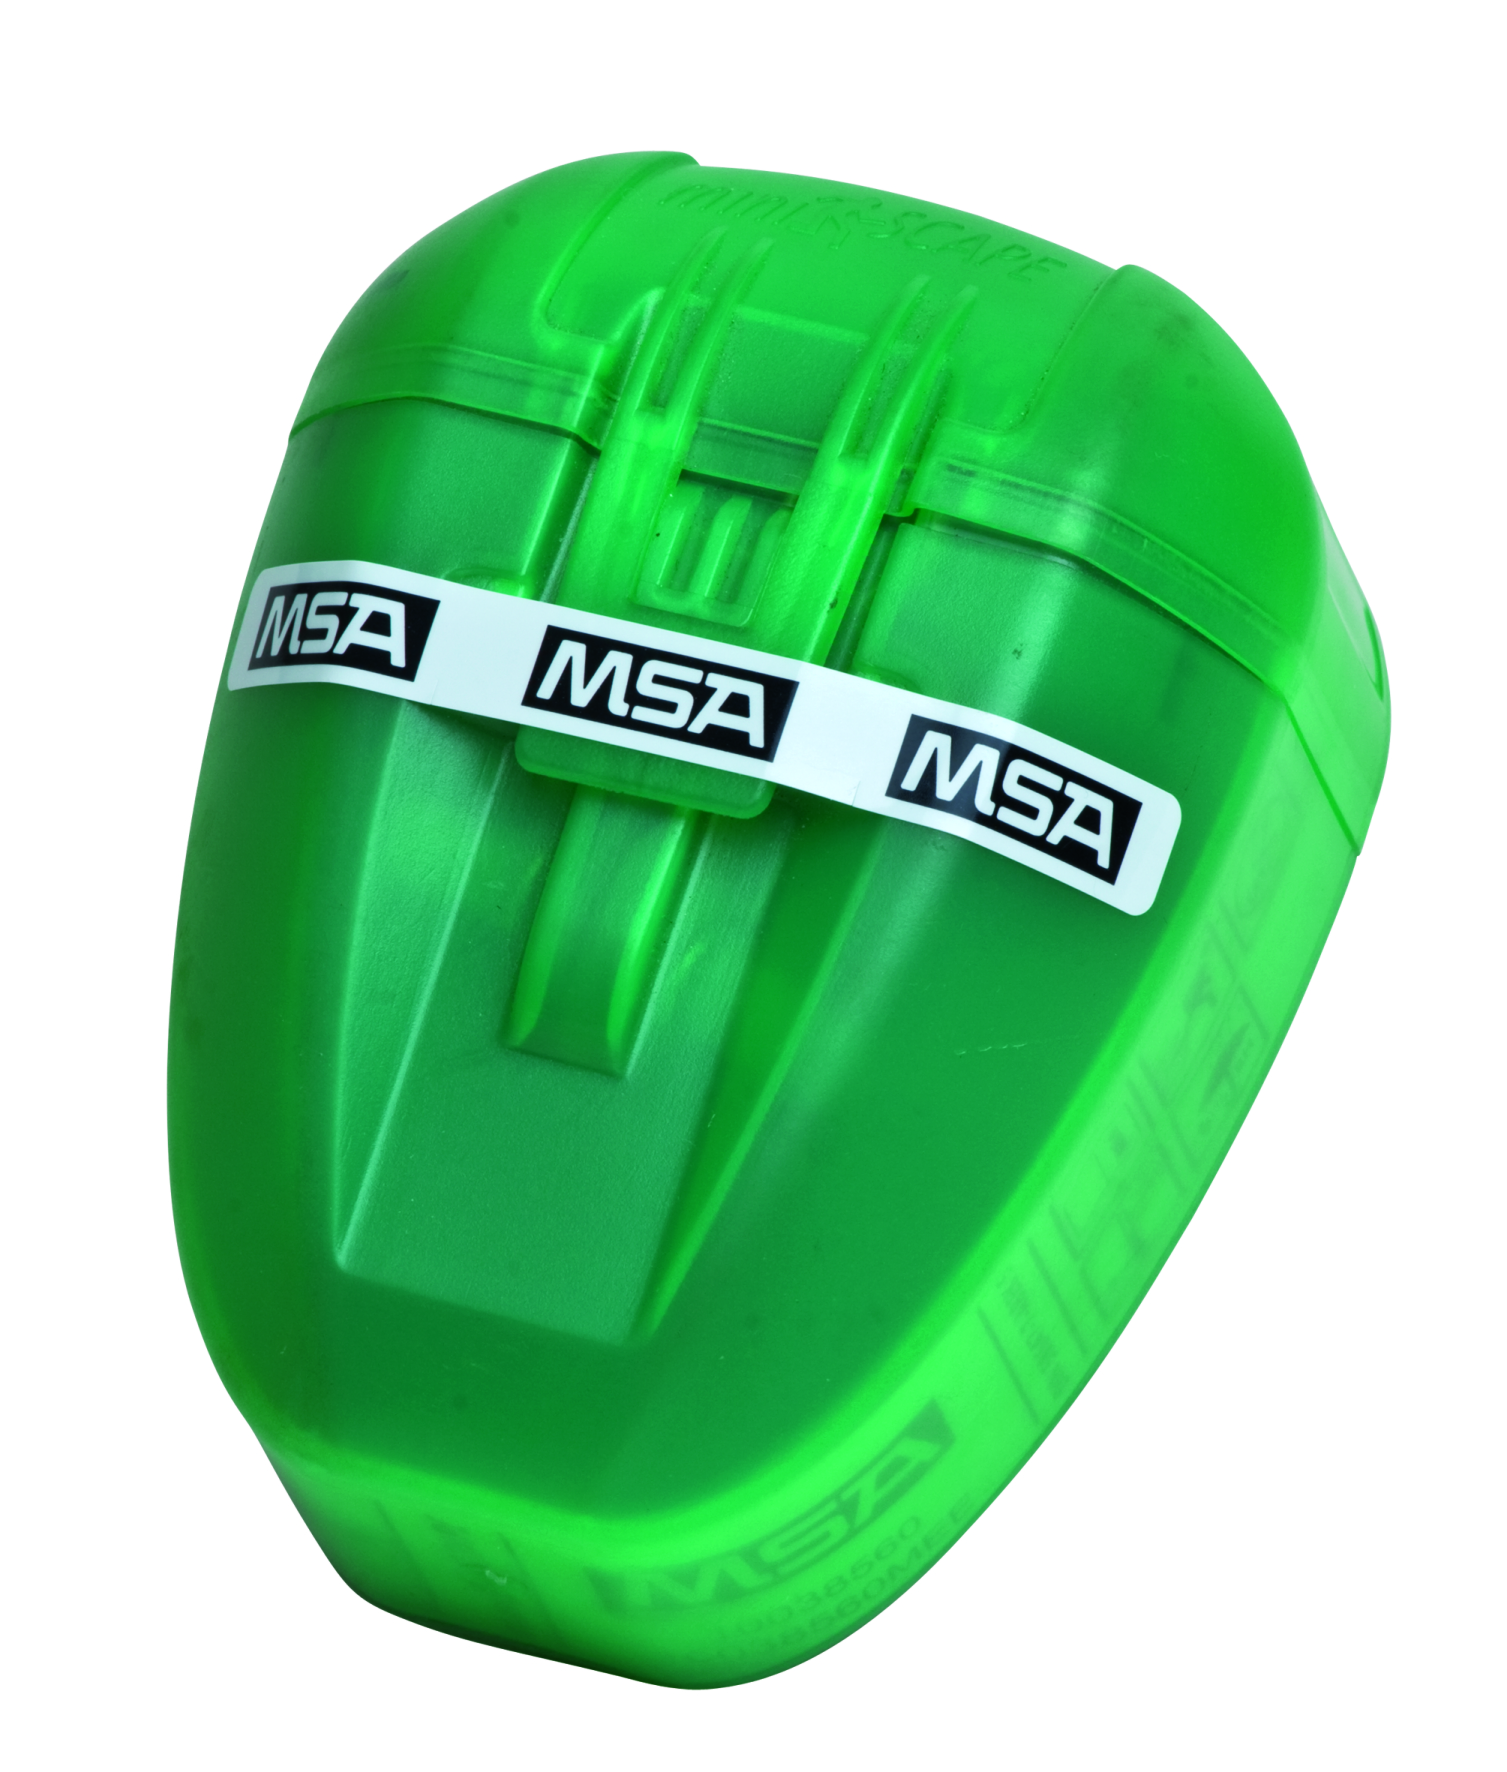 Filtrační únikový respirátor MSA MiniScape - 5 min - 10038560 MEE